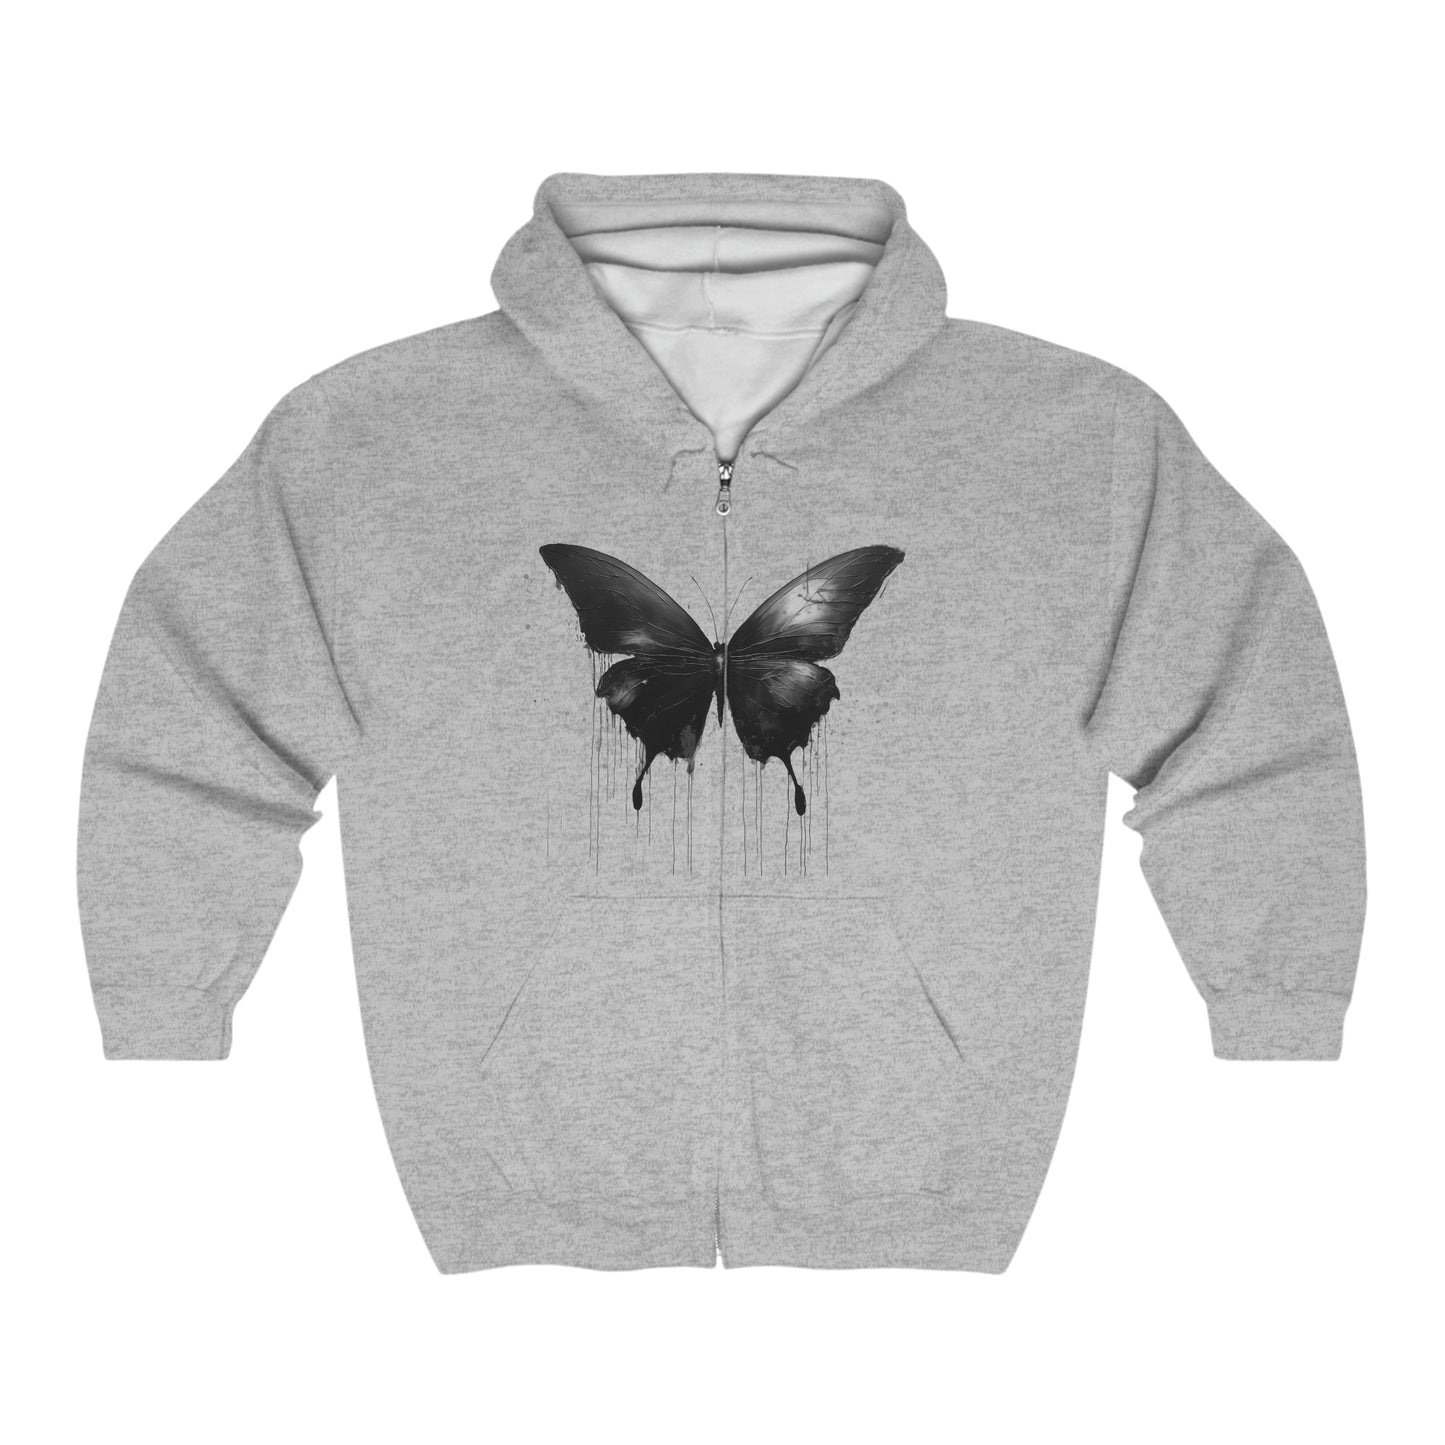 Black Butterfly Unisex Heavy Blend™ Full Zip Hooded Sweatshirt Long Sleeve Tee, Dripping Hoodie Long Sleeve Cool Design Dark Style Edgy